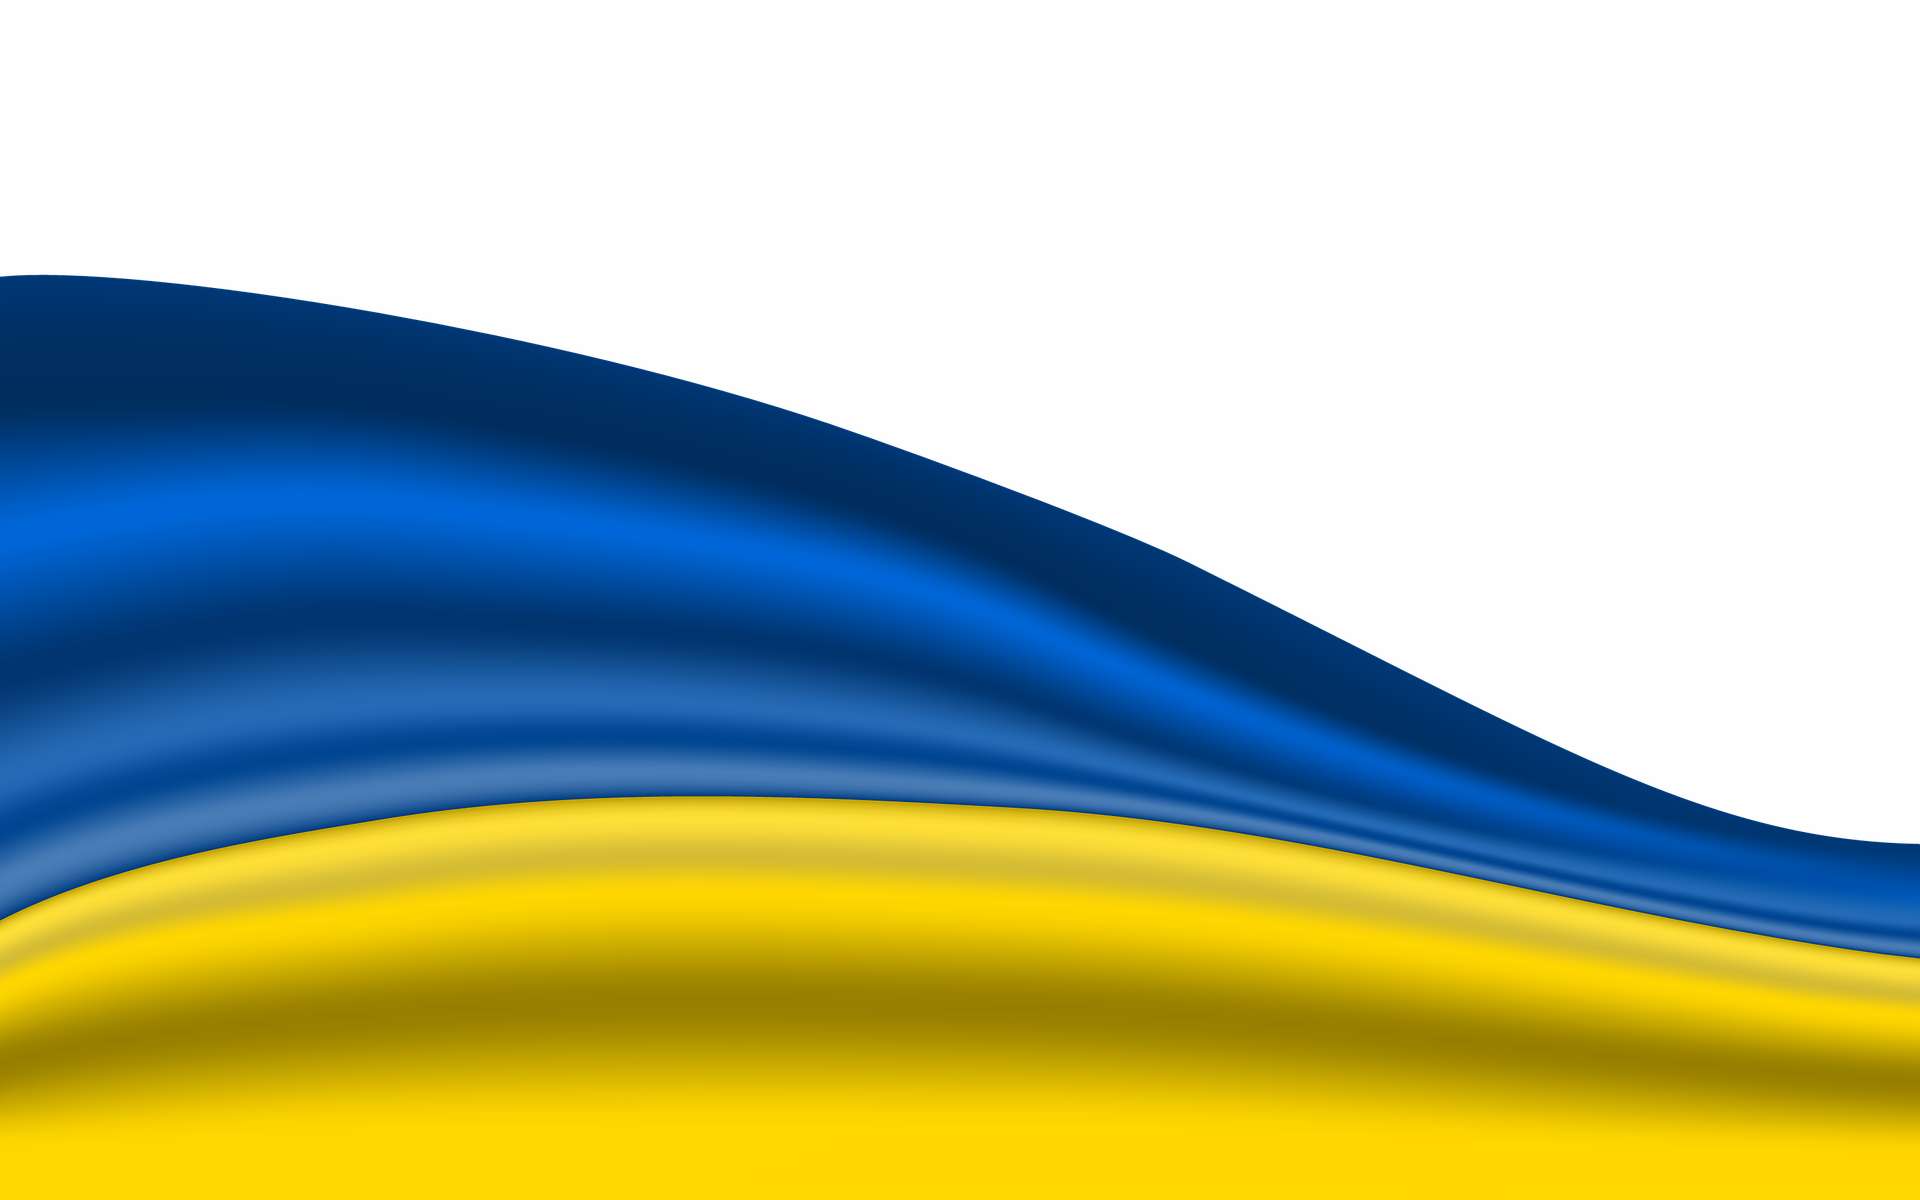 Toute personne détentrice d’informations concrètes sur les biens appartenant à des élites soutenant le régime de Vladimir Poutine peut apporter son aide à l’Ukraine. © DUOTONE/Pixabay